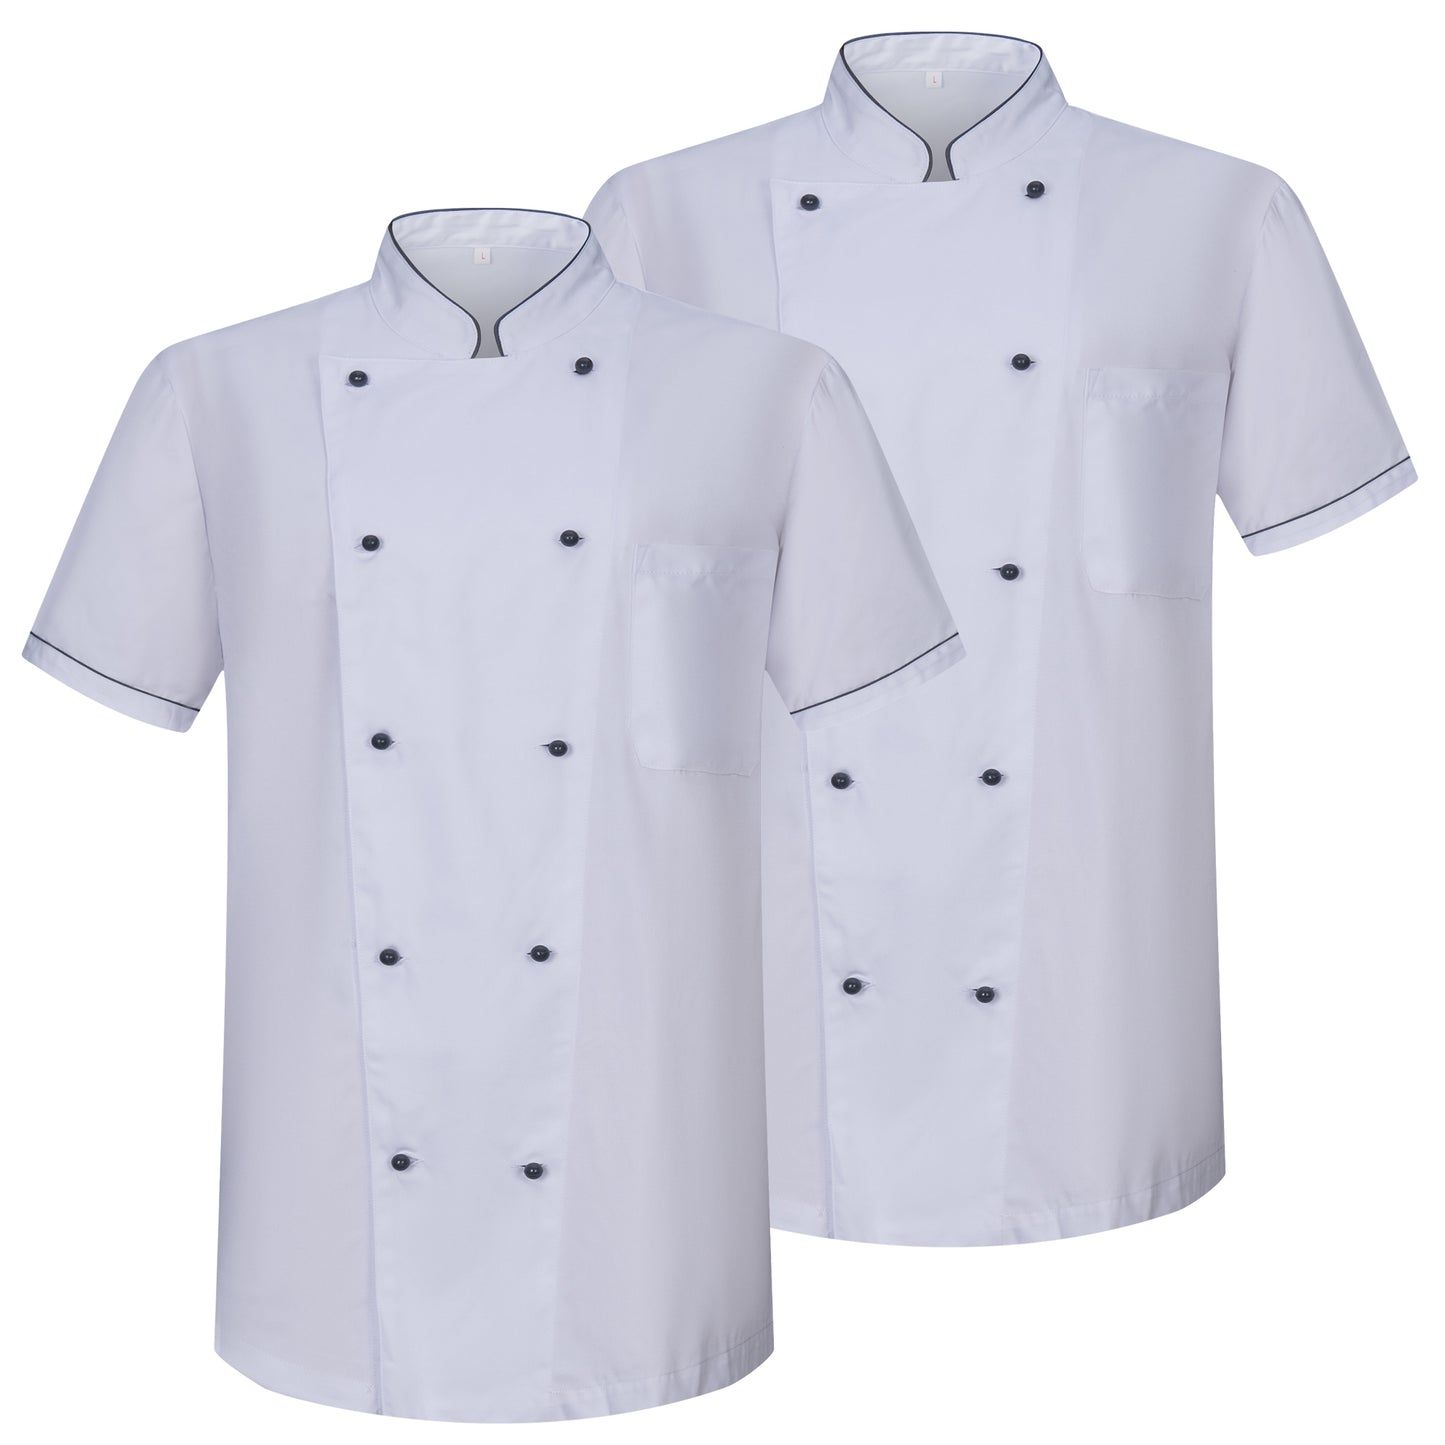 Pack 2 Unidades - Chaqueta Cocinero Hombre - Chaqueta de Chef Hombre - Uniforme Hosteleria - Ref.8501B